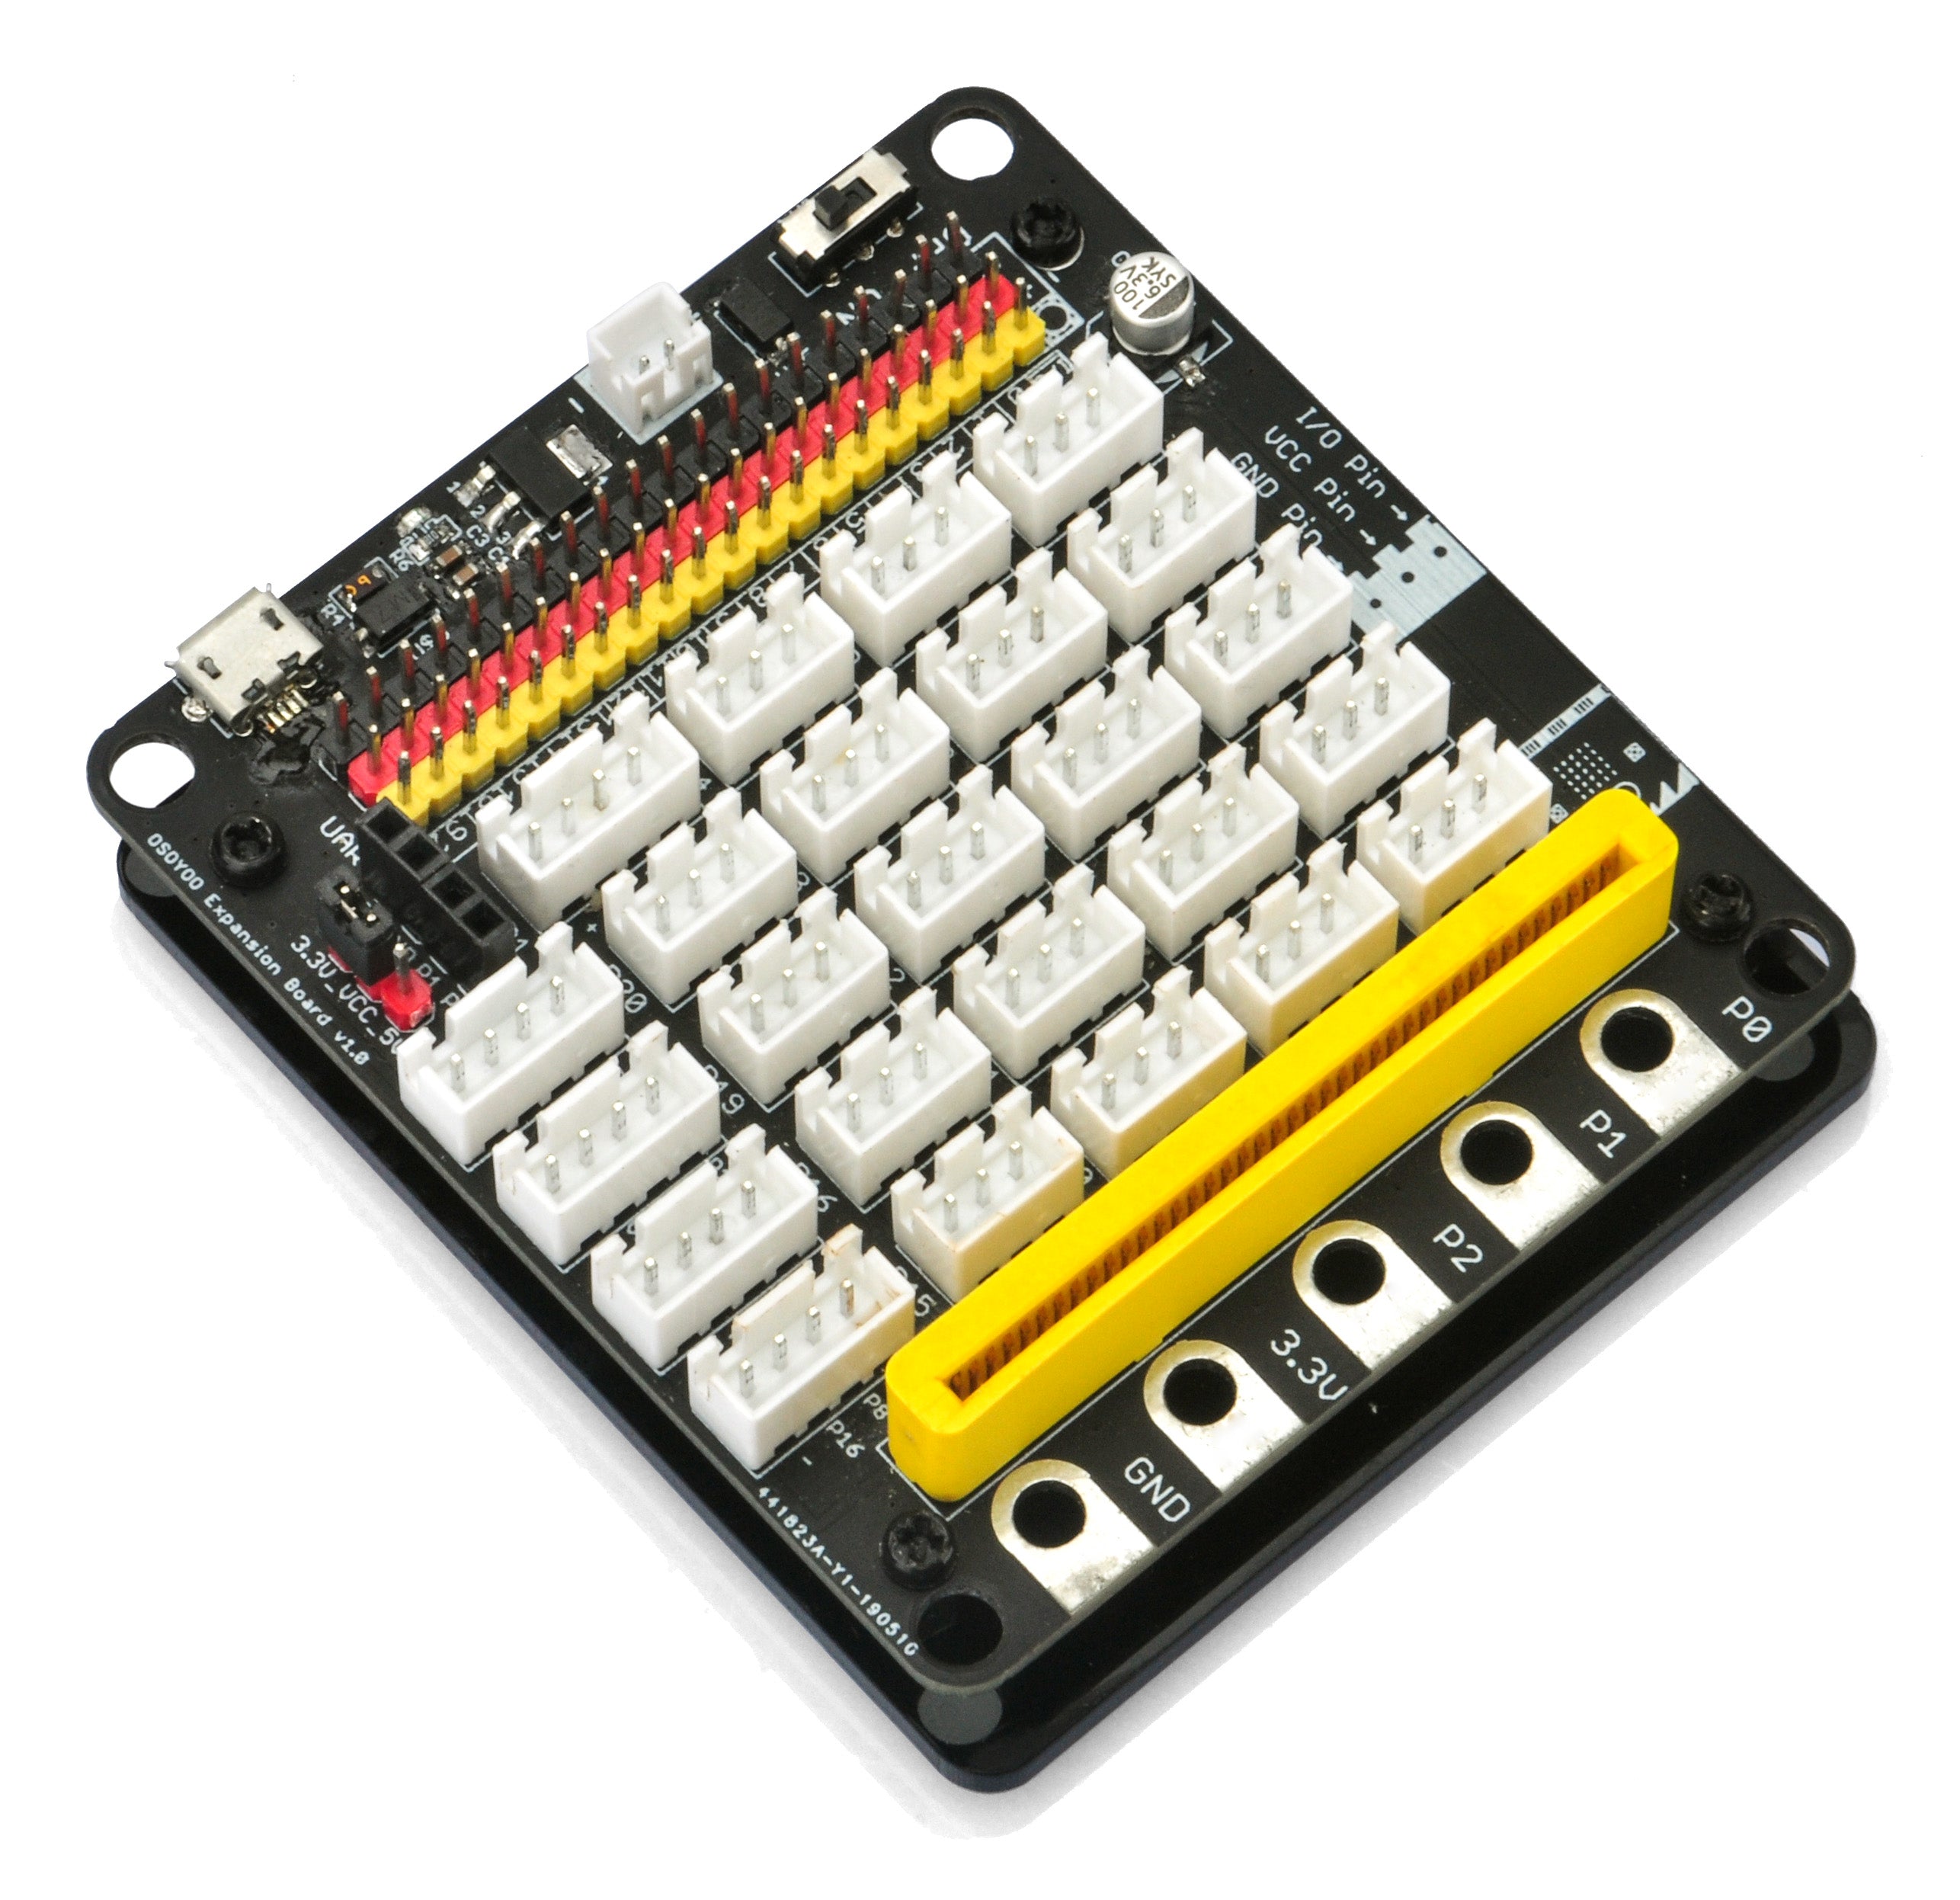 PnP board For Micro bit STEM Kit(model#2019011500)